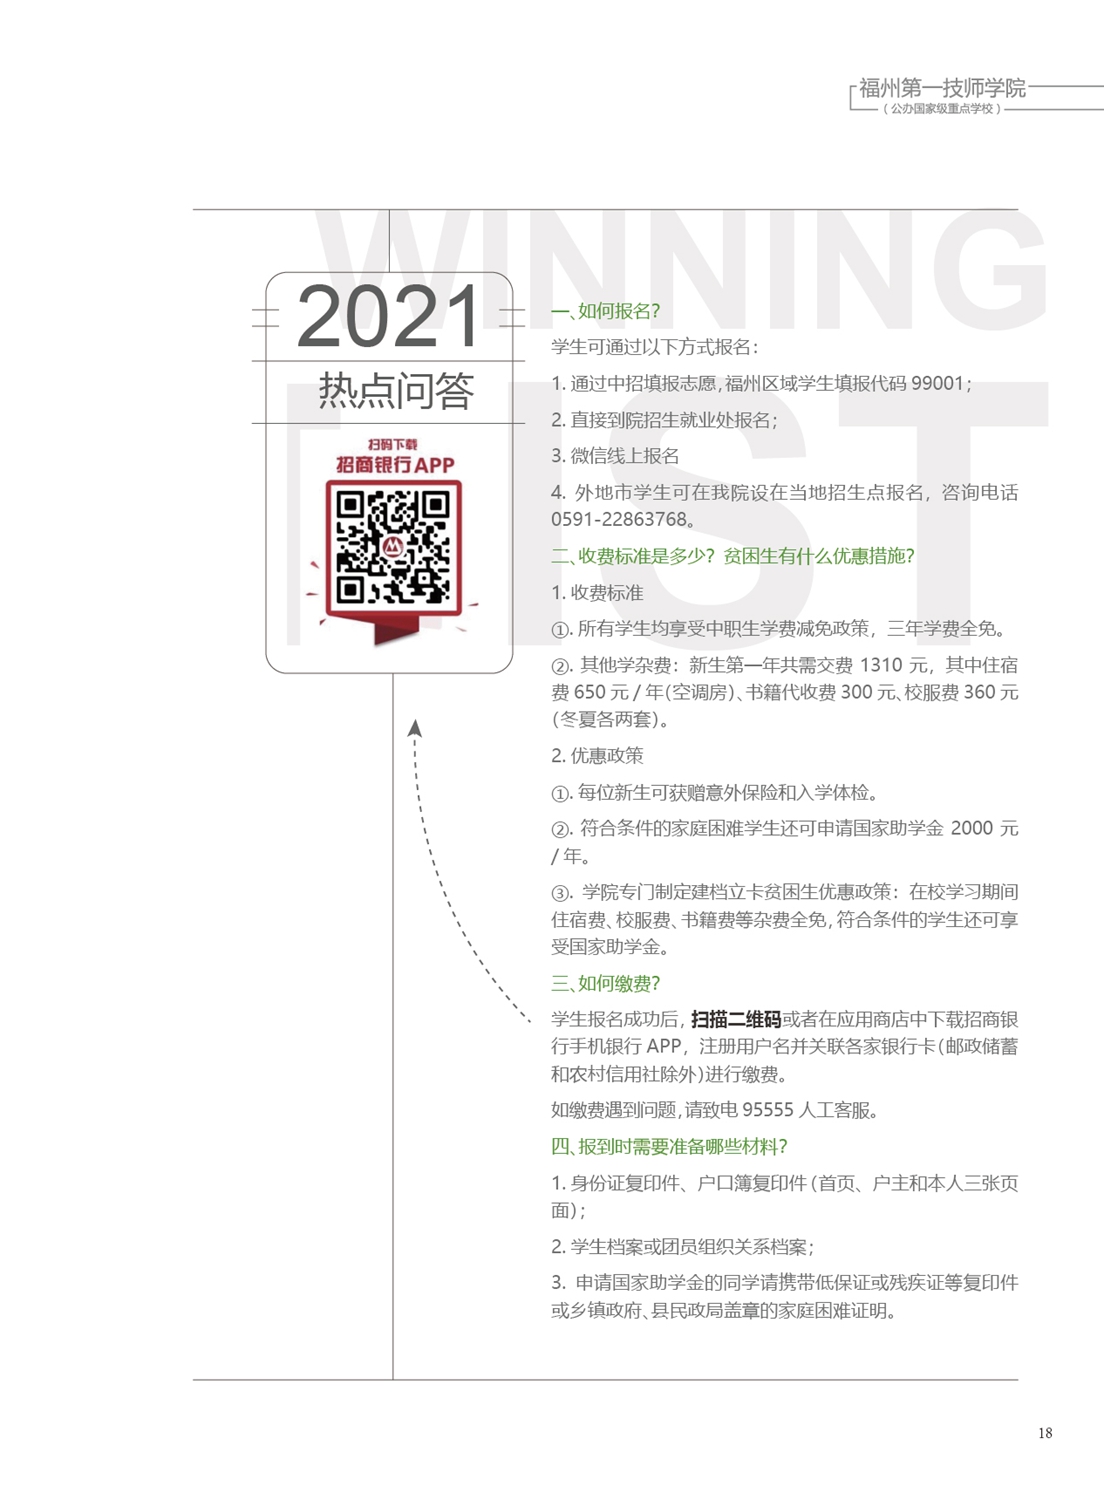 福州第一技师学院2021年招生手册(图19)